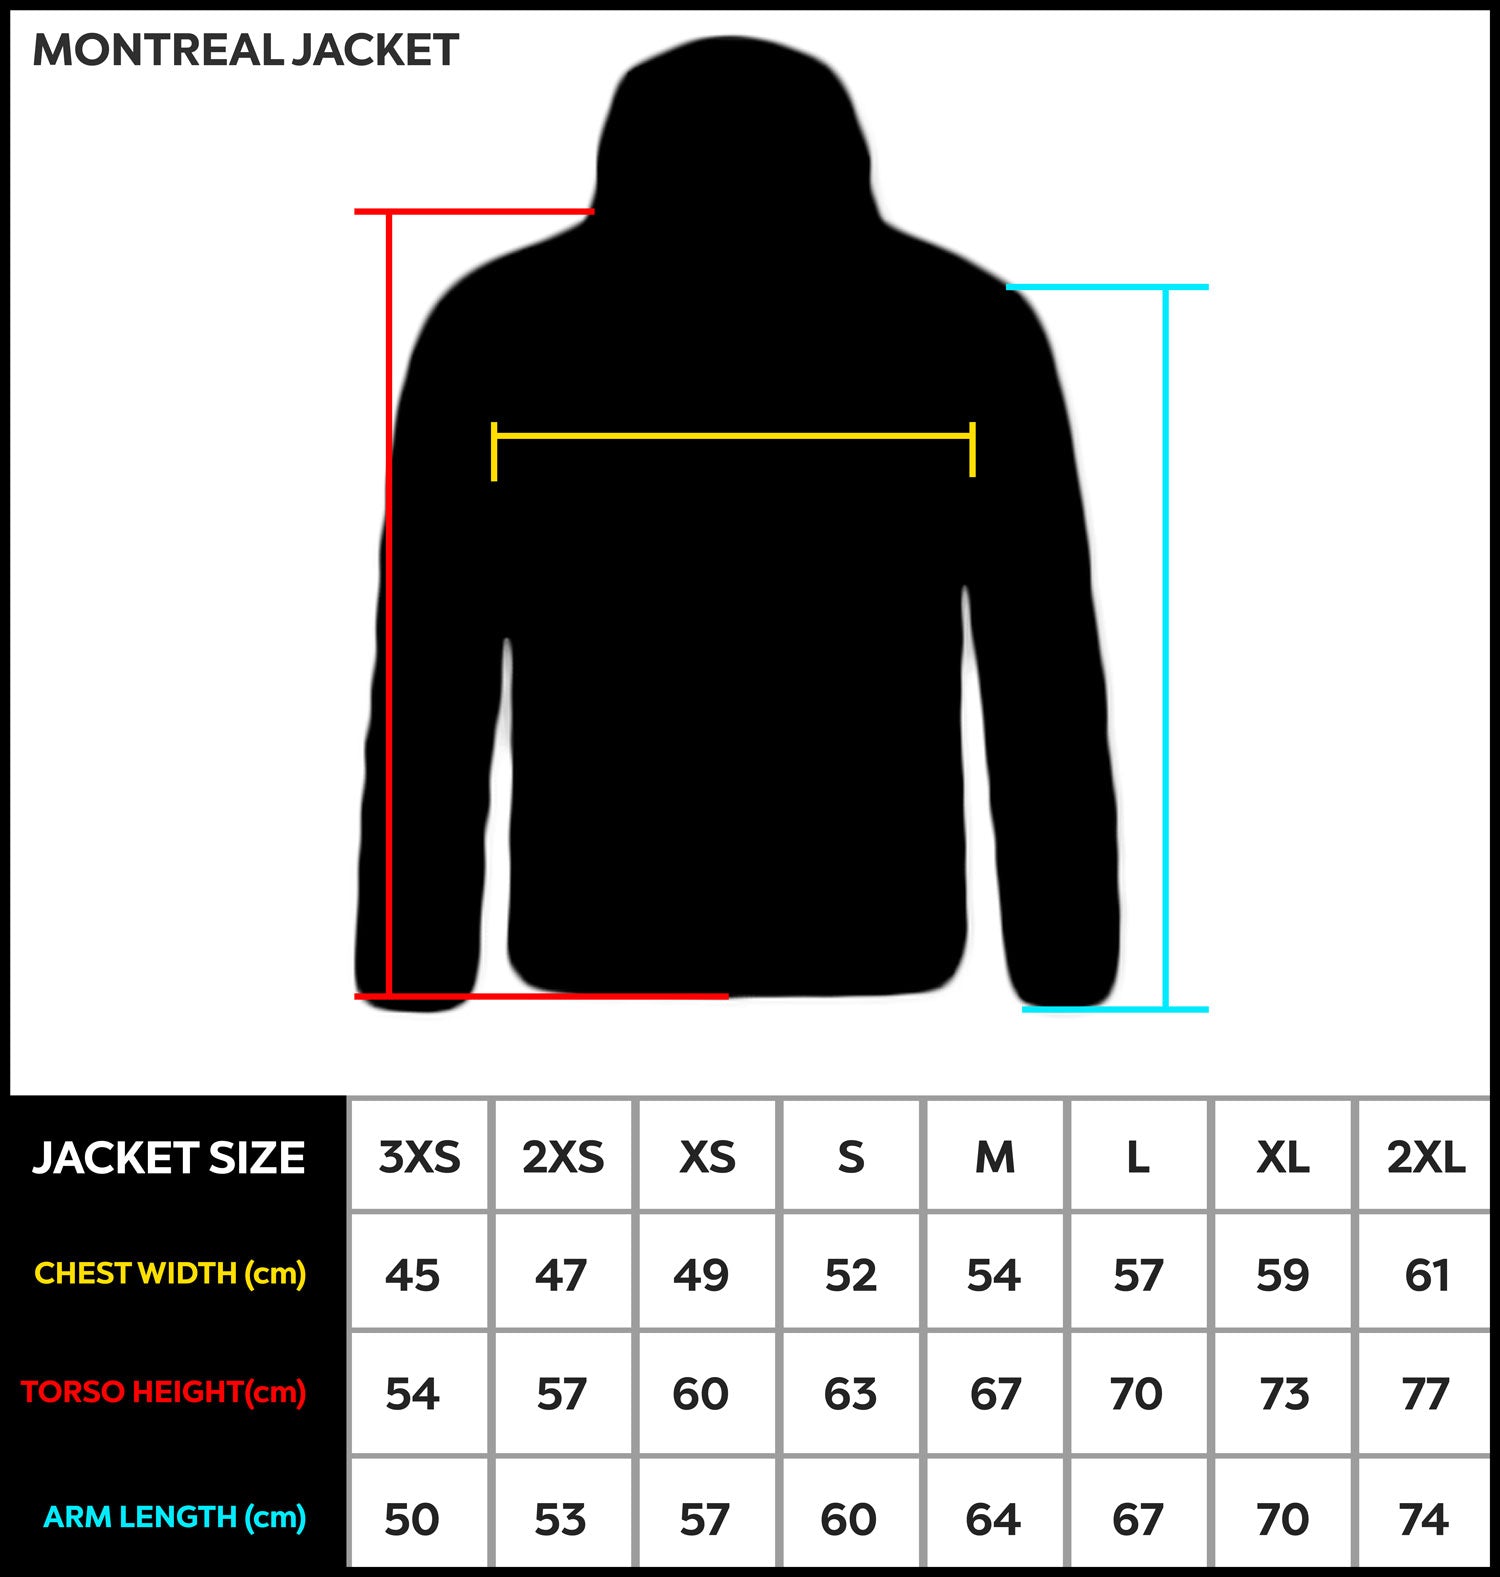 Montreal Jacket